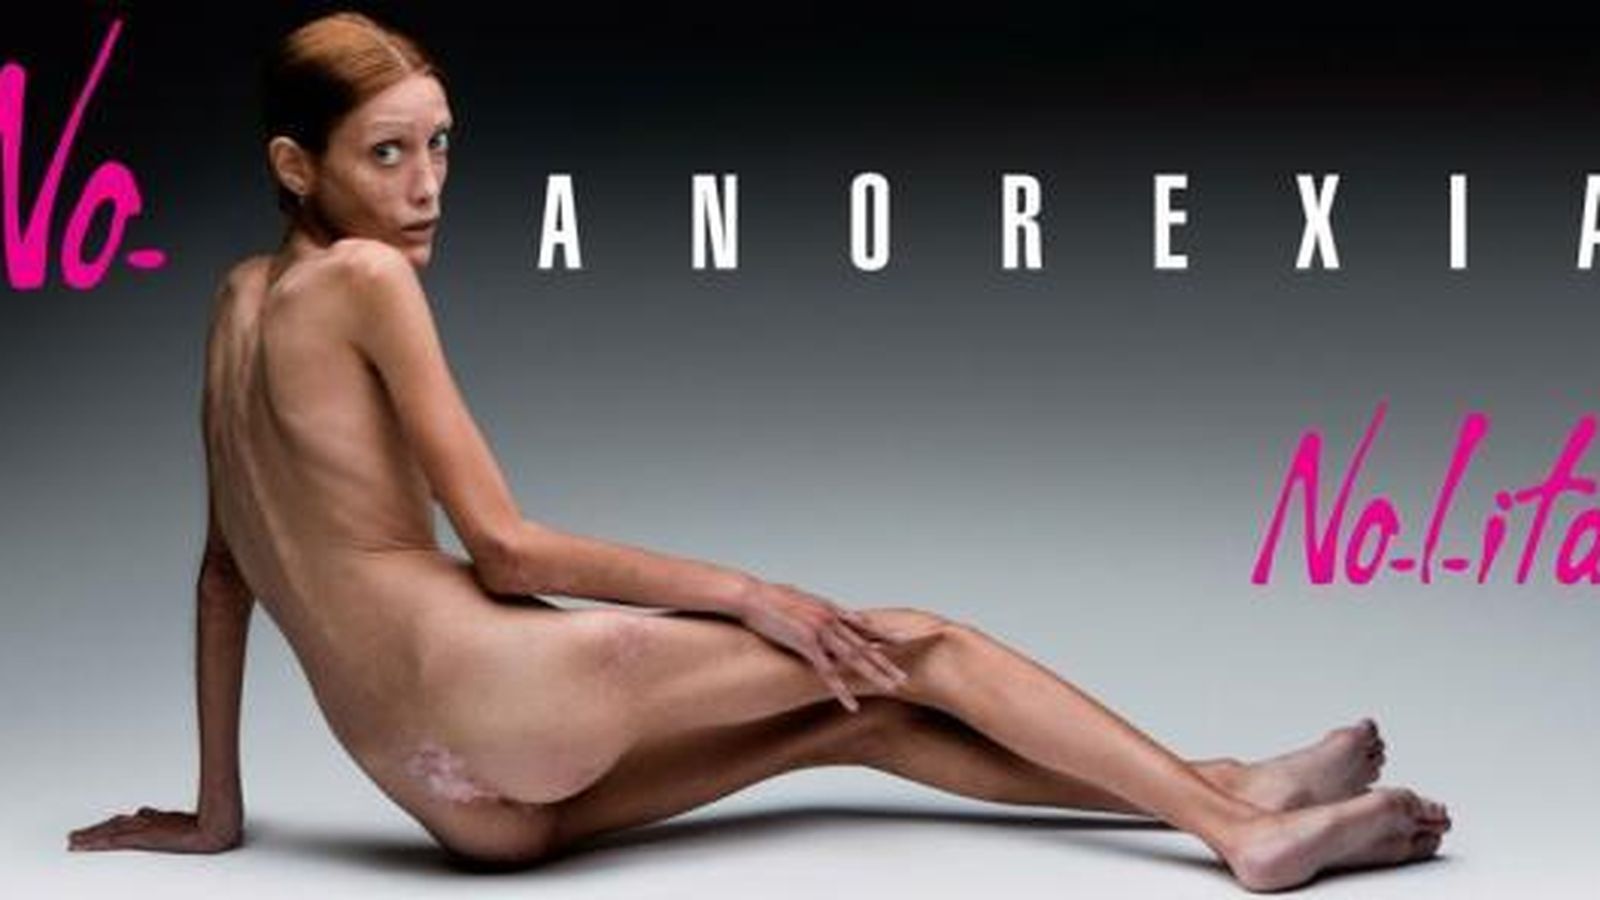 Foto: isabelle Caro, la modelo que protagonizó una campaña contra la anorexia en Francia (OLIVIERO TOSCANI)